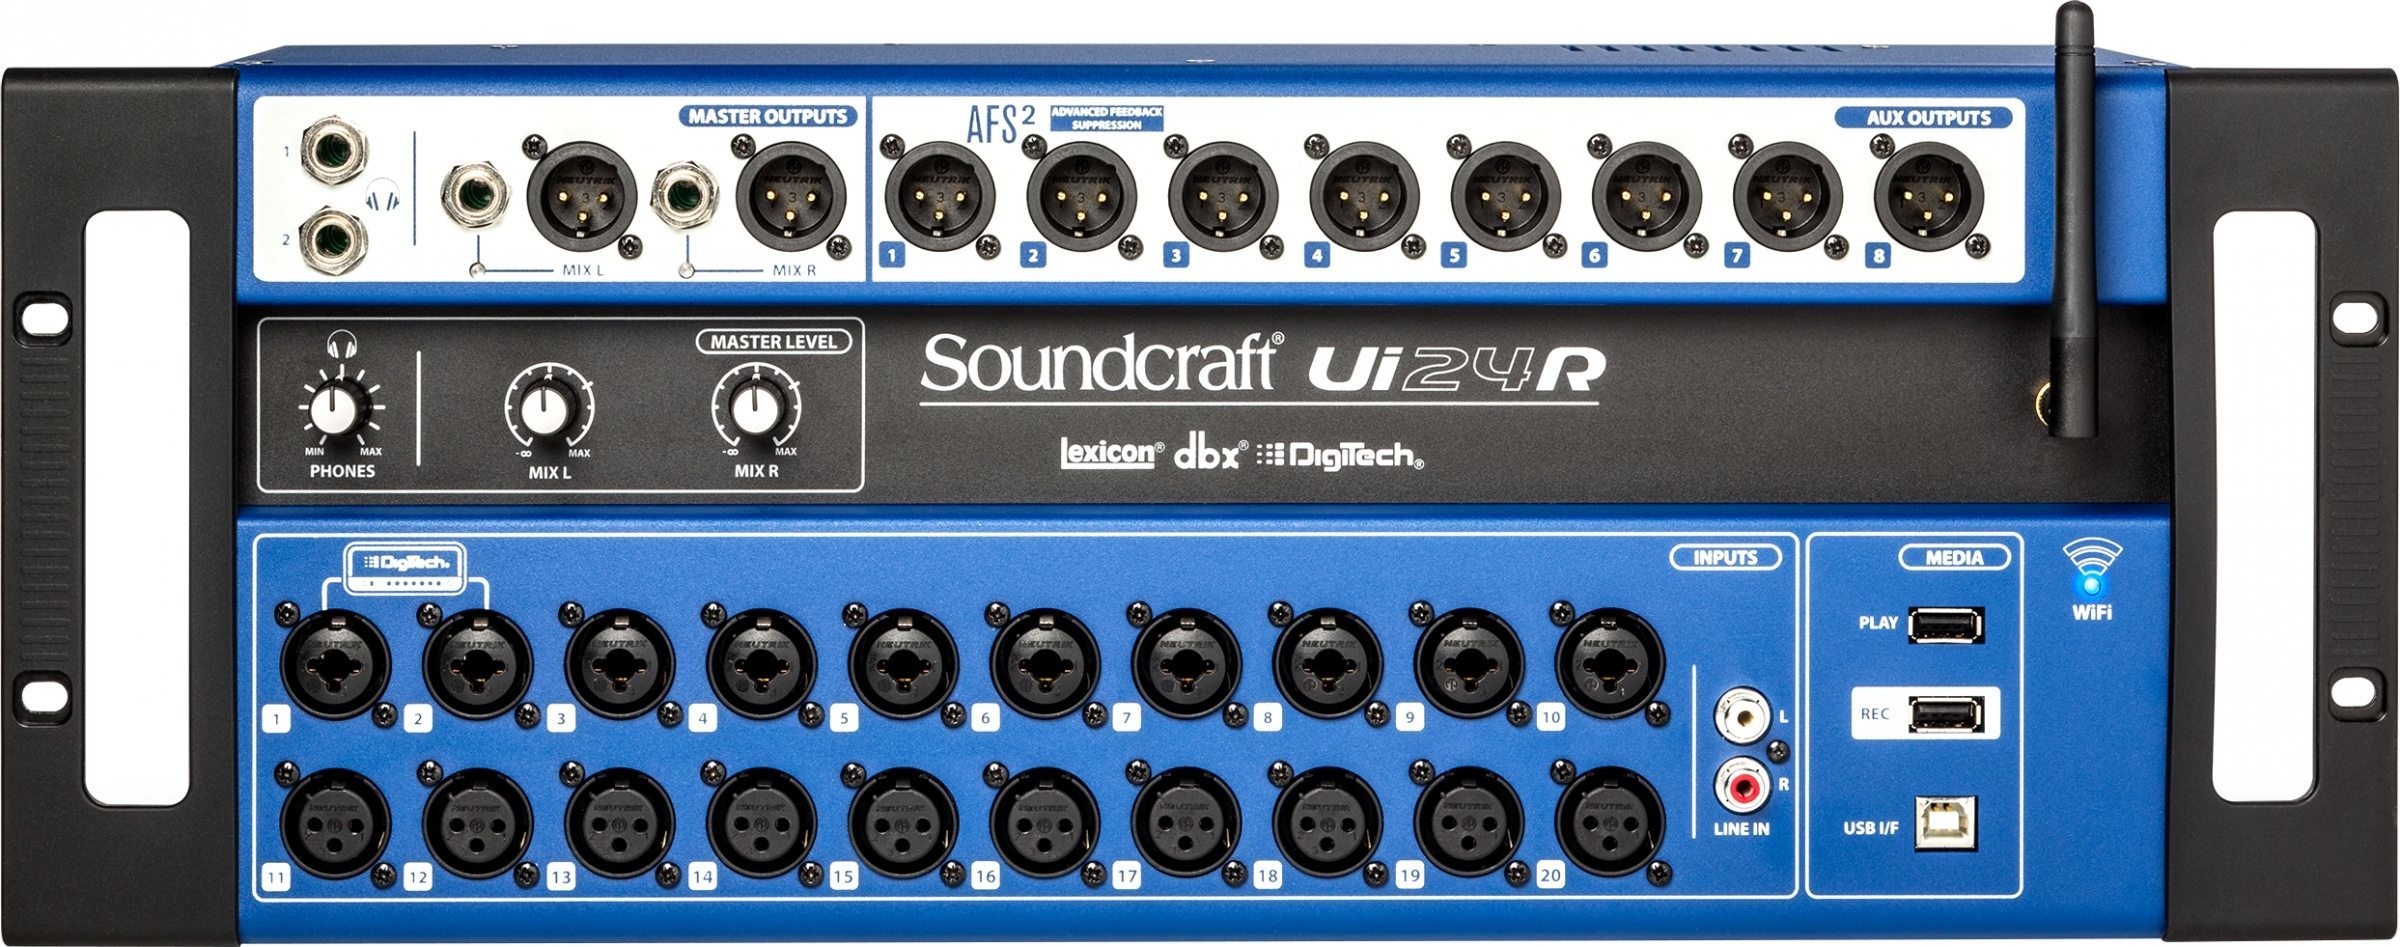 Soundcraft Ui 24R